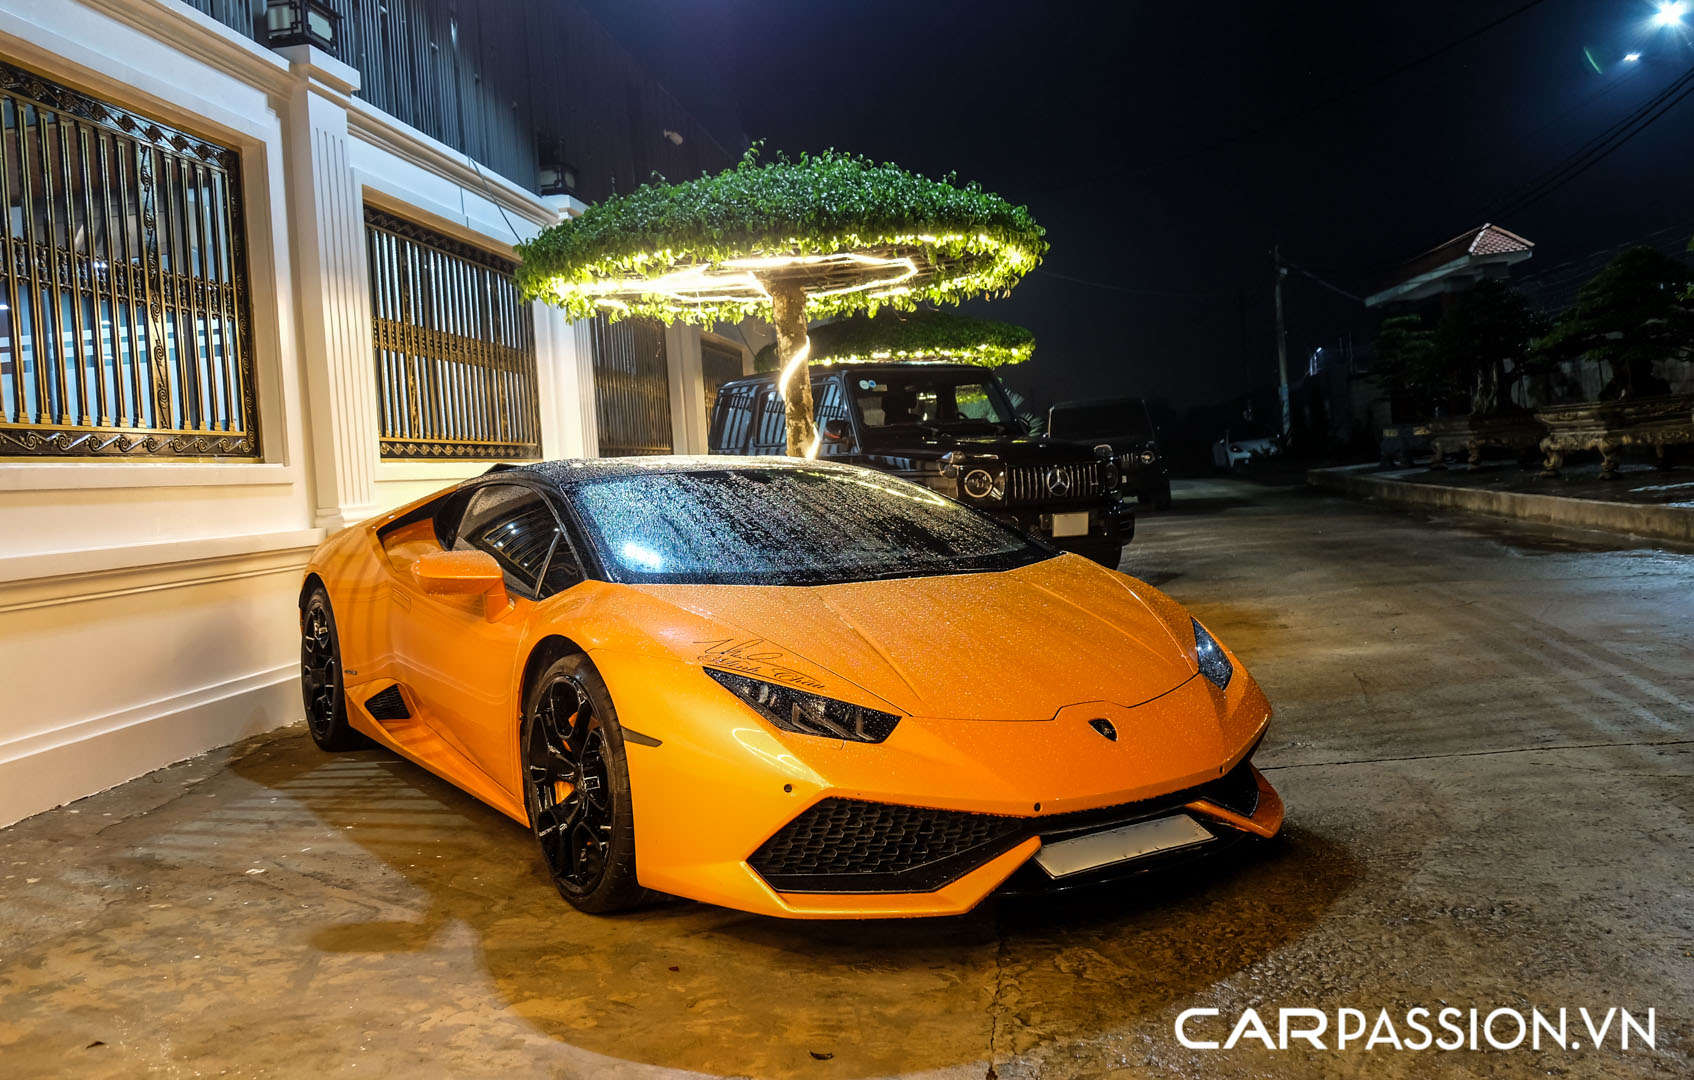 CP-Bộ đôi Lamborghini Huracan độ độc đáo13.jpg